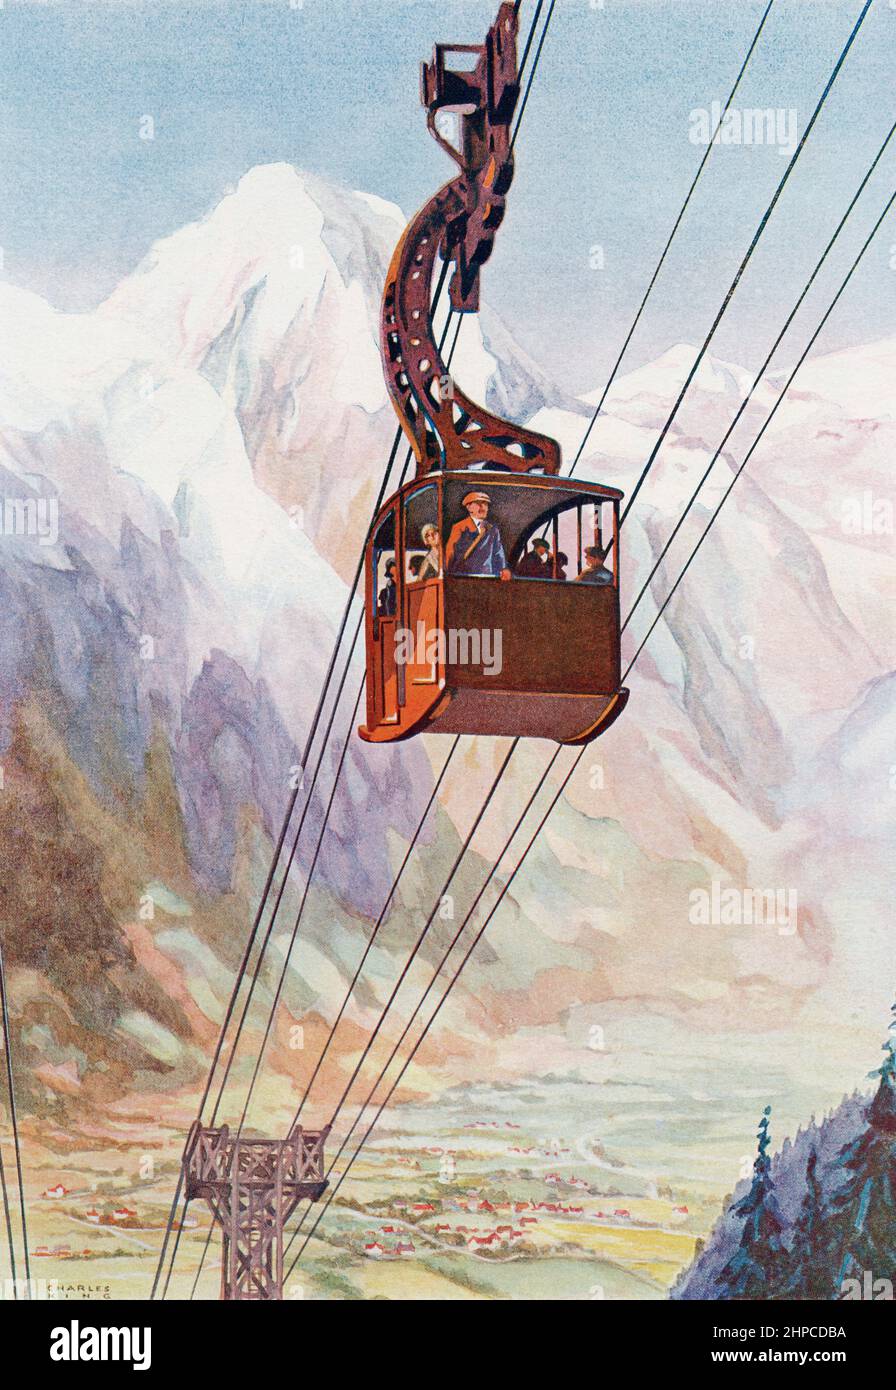 Eine Bergbahn, Mont Blanc im Hintergrund. Aus dem Wonder Book of Science, erschienen in den 30er Jahren. Stockfoto